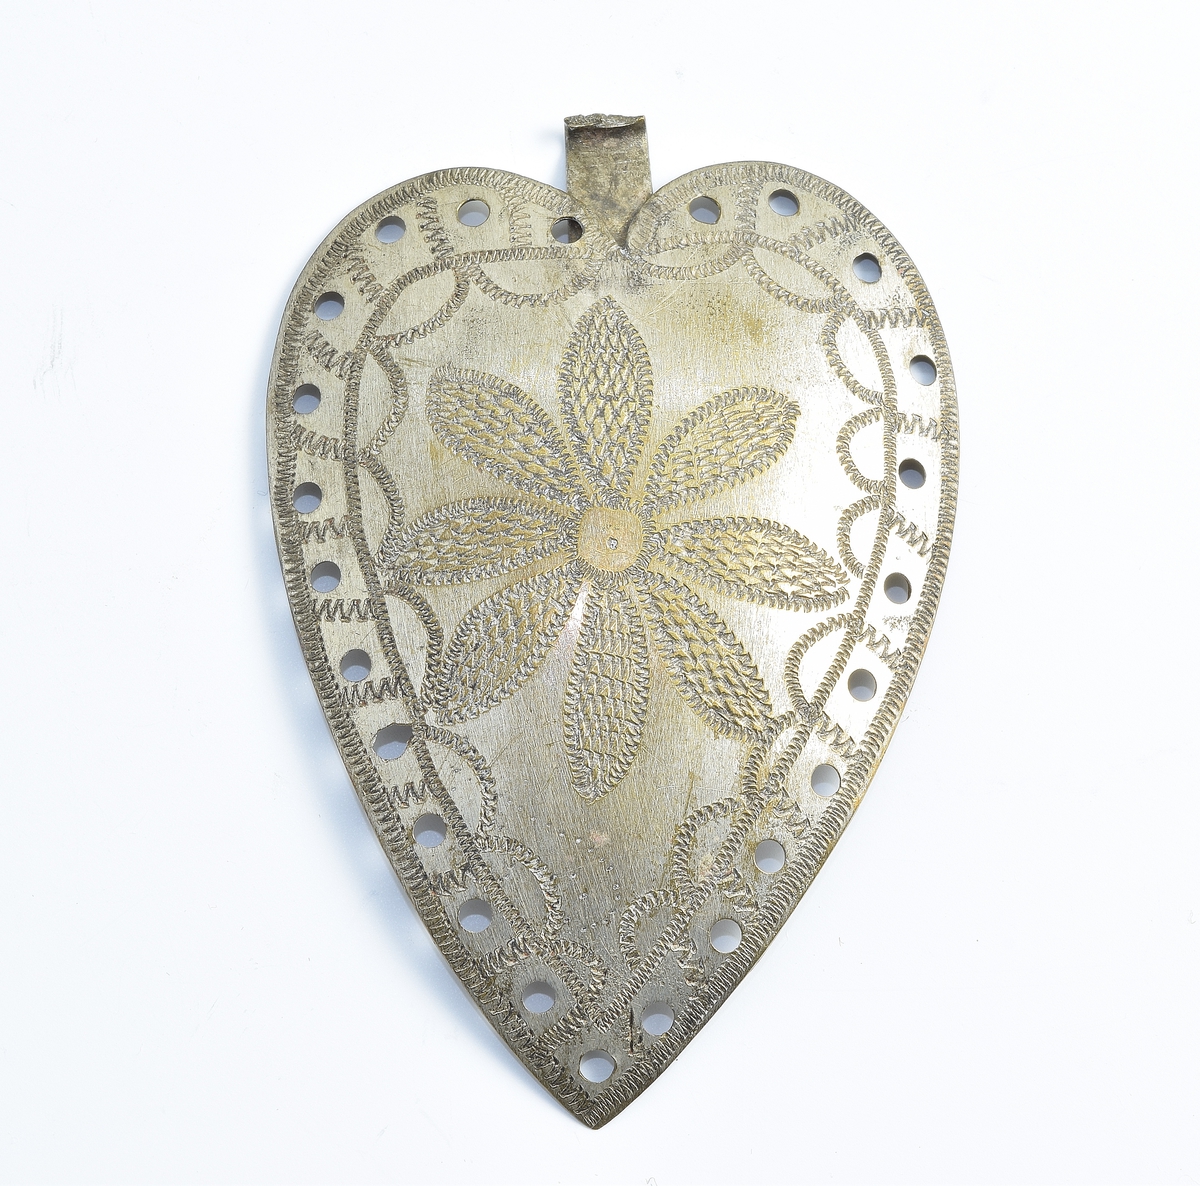 Tynn, hjerteformet spenne i sølv dekorert med en siselert blomst med åtte kronblader. Spennen er gjennomhullet på kanten.